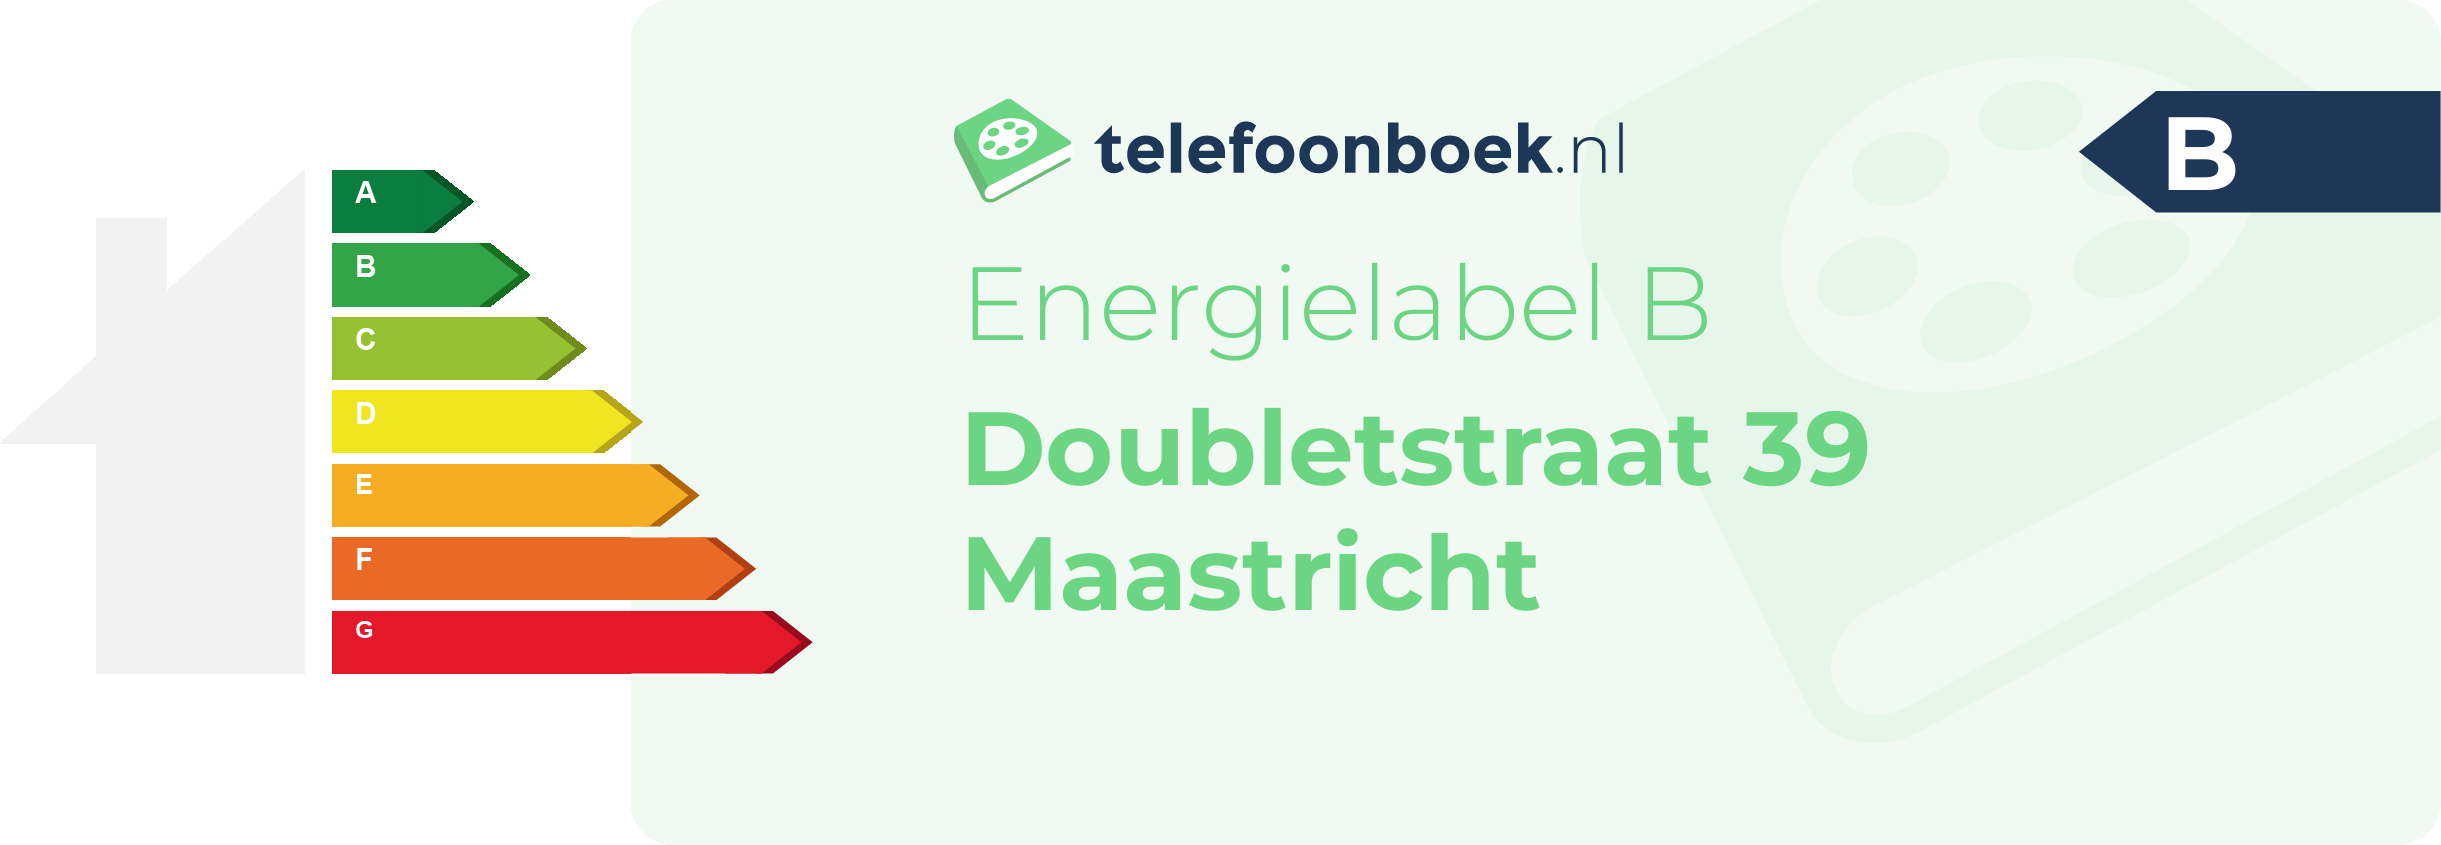 Energielabel Doubletstraat 39 Maastricht